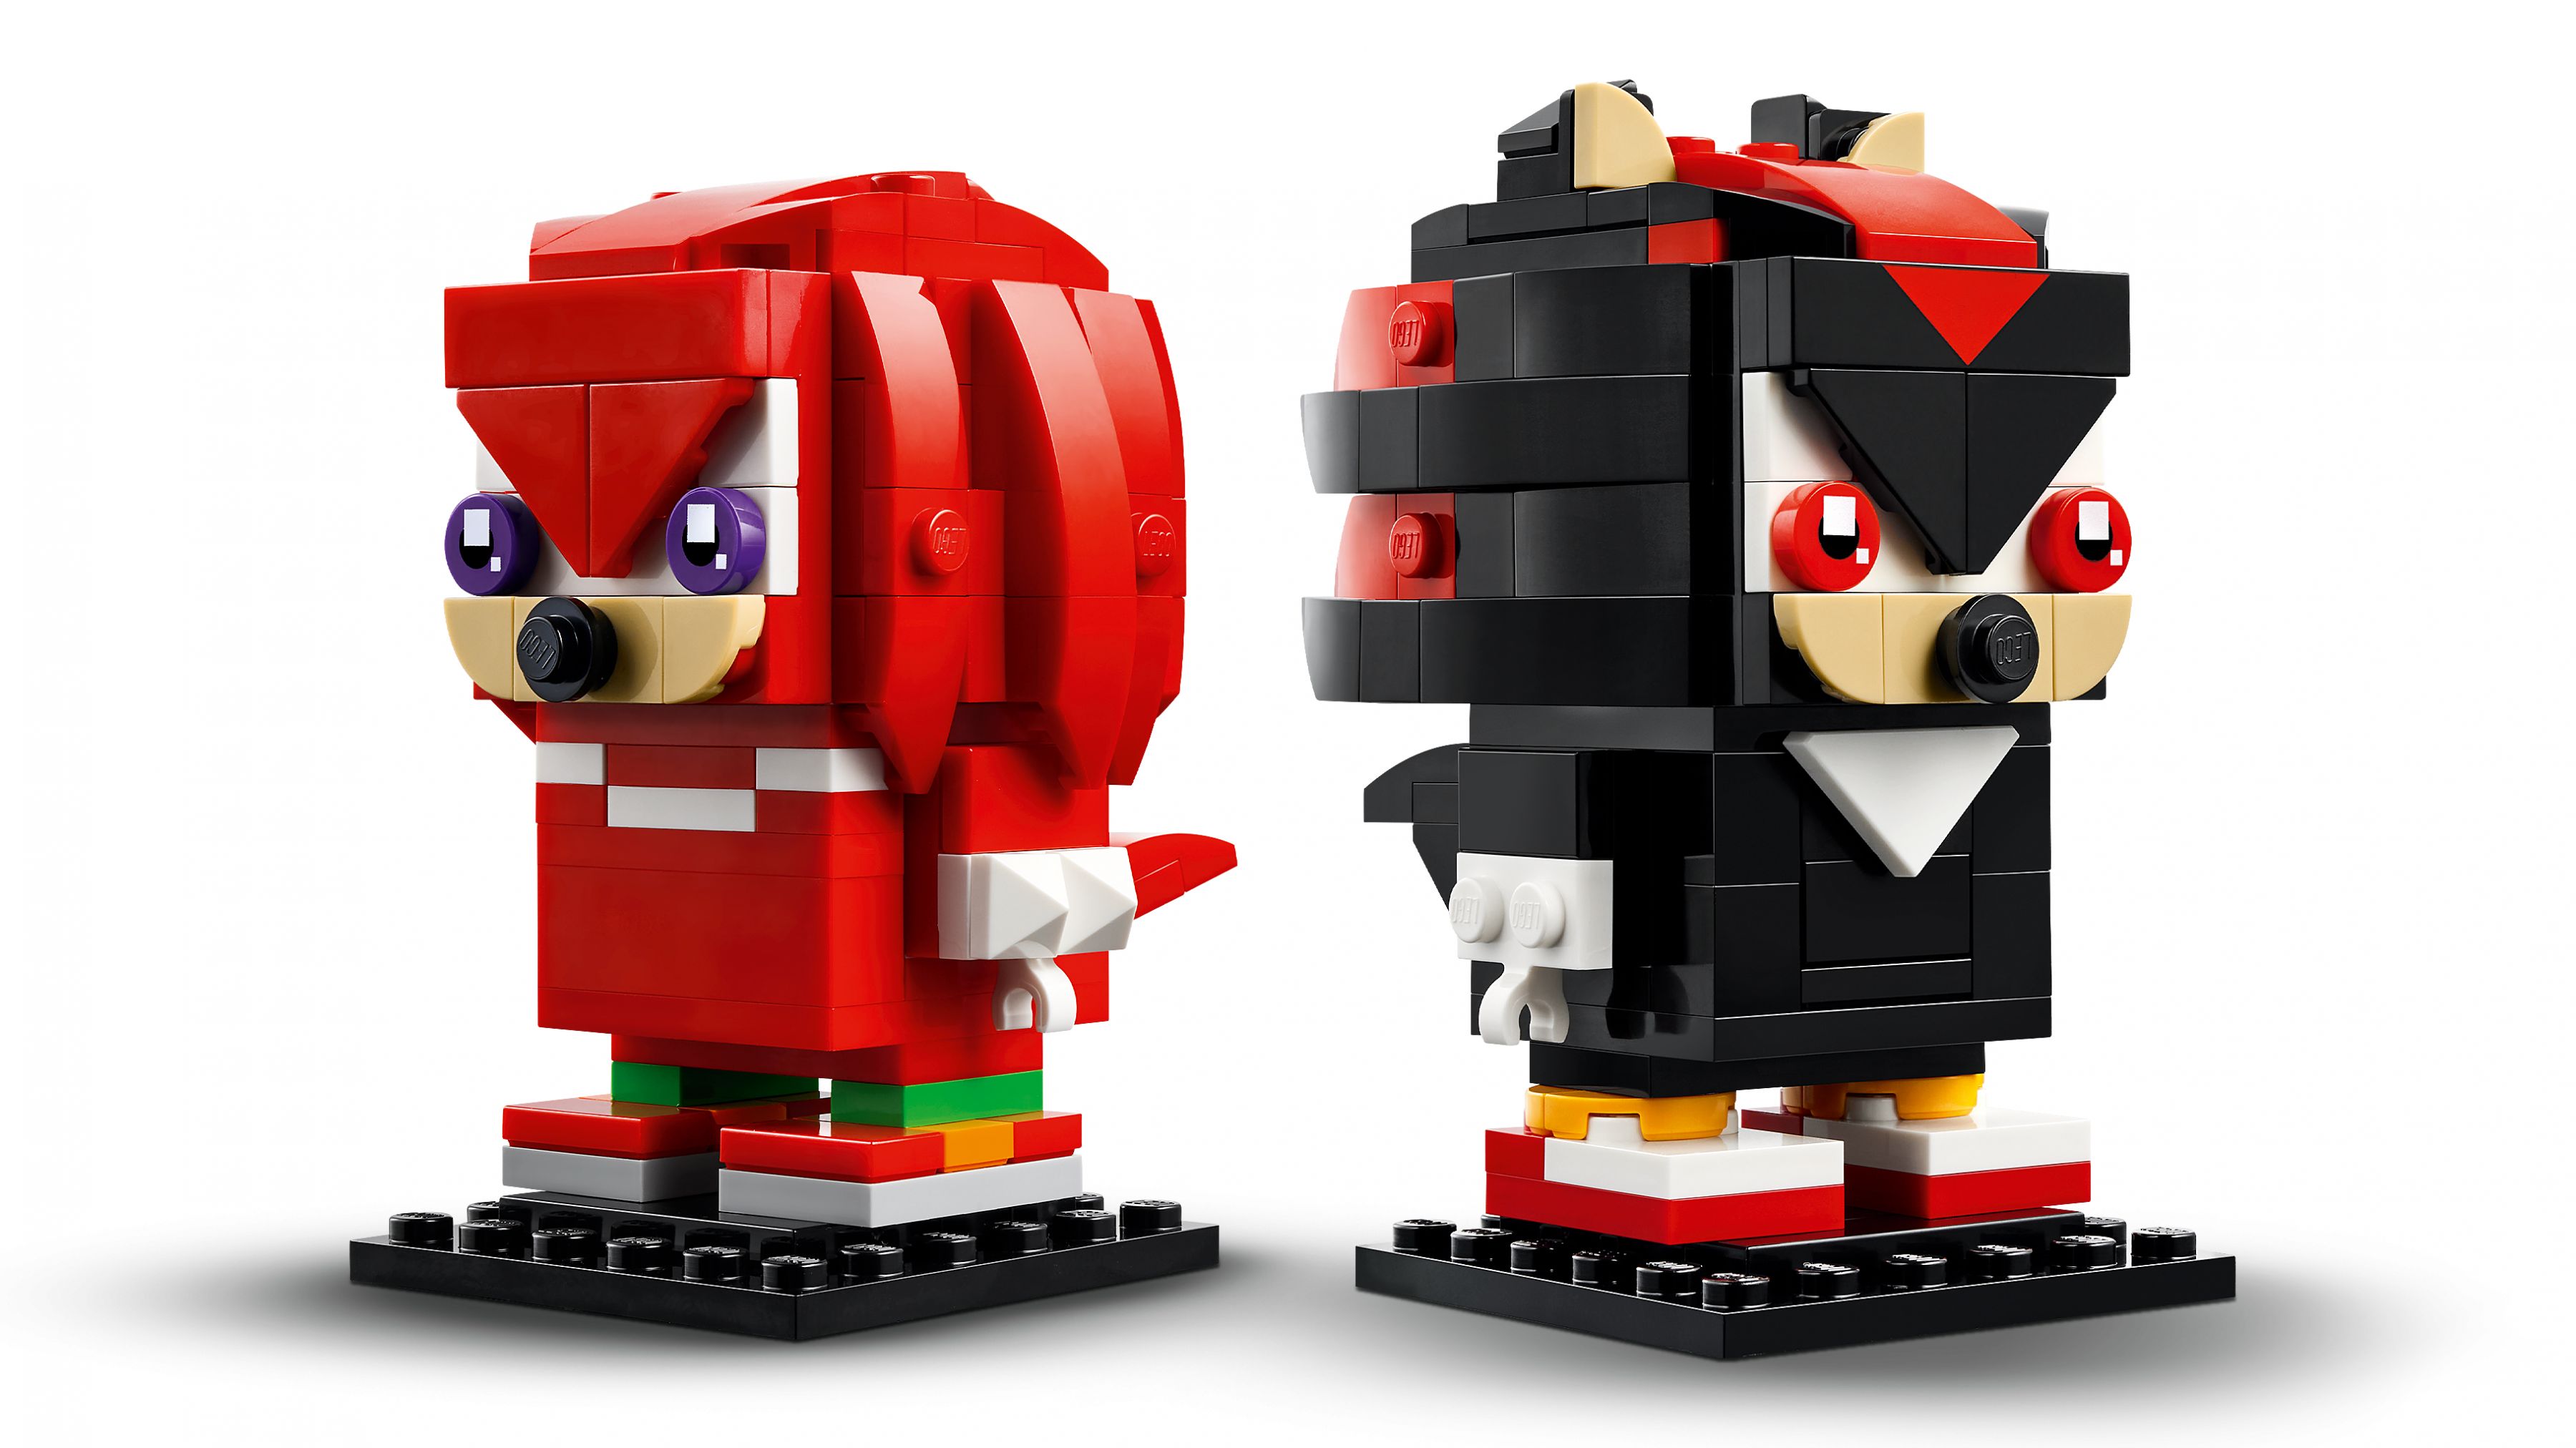 LEGO BrickHeadz 40672 Sonic the Hedgehog™: Knuckles & Shadow LEGO_40672_WEB_SEC01_NOBG.jpg